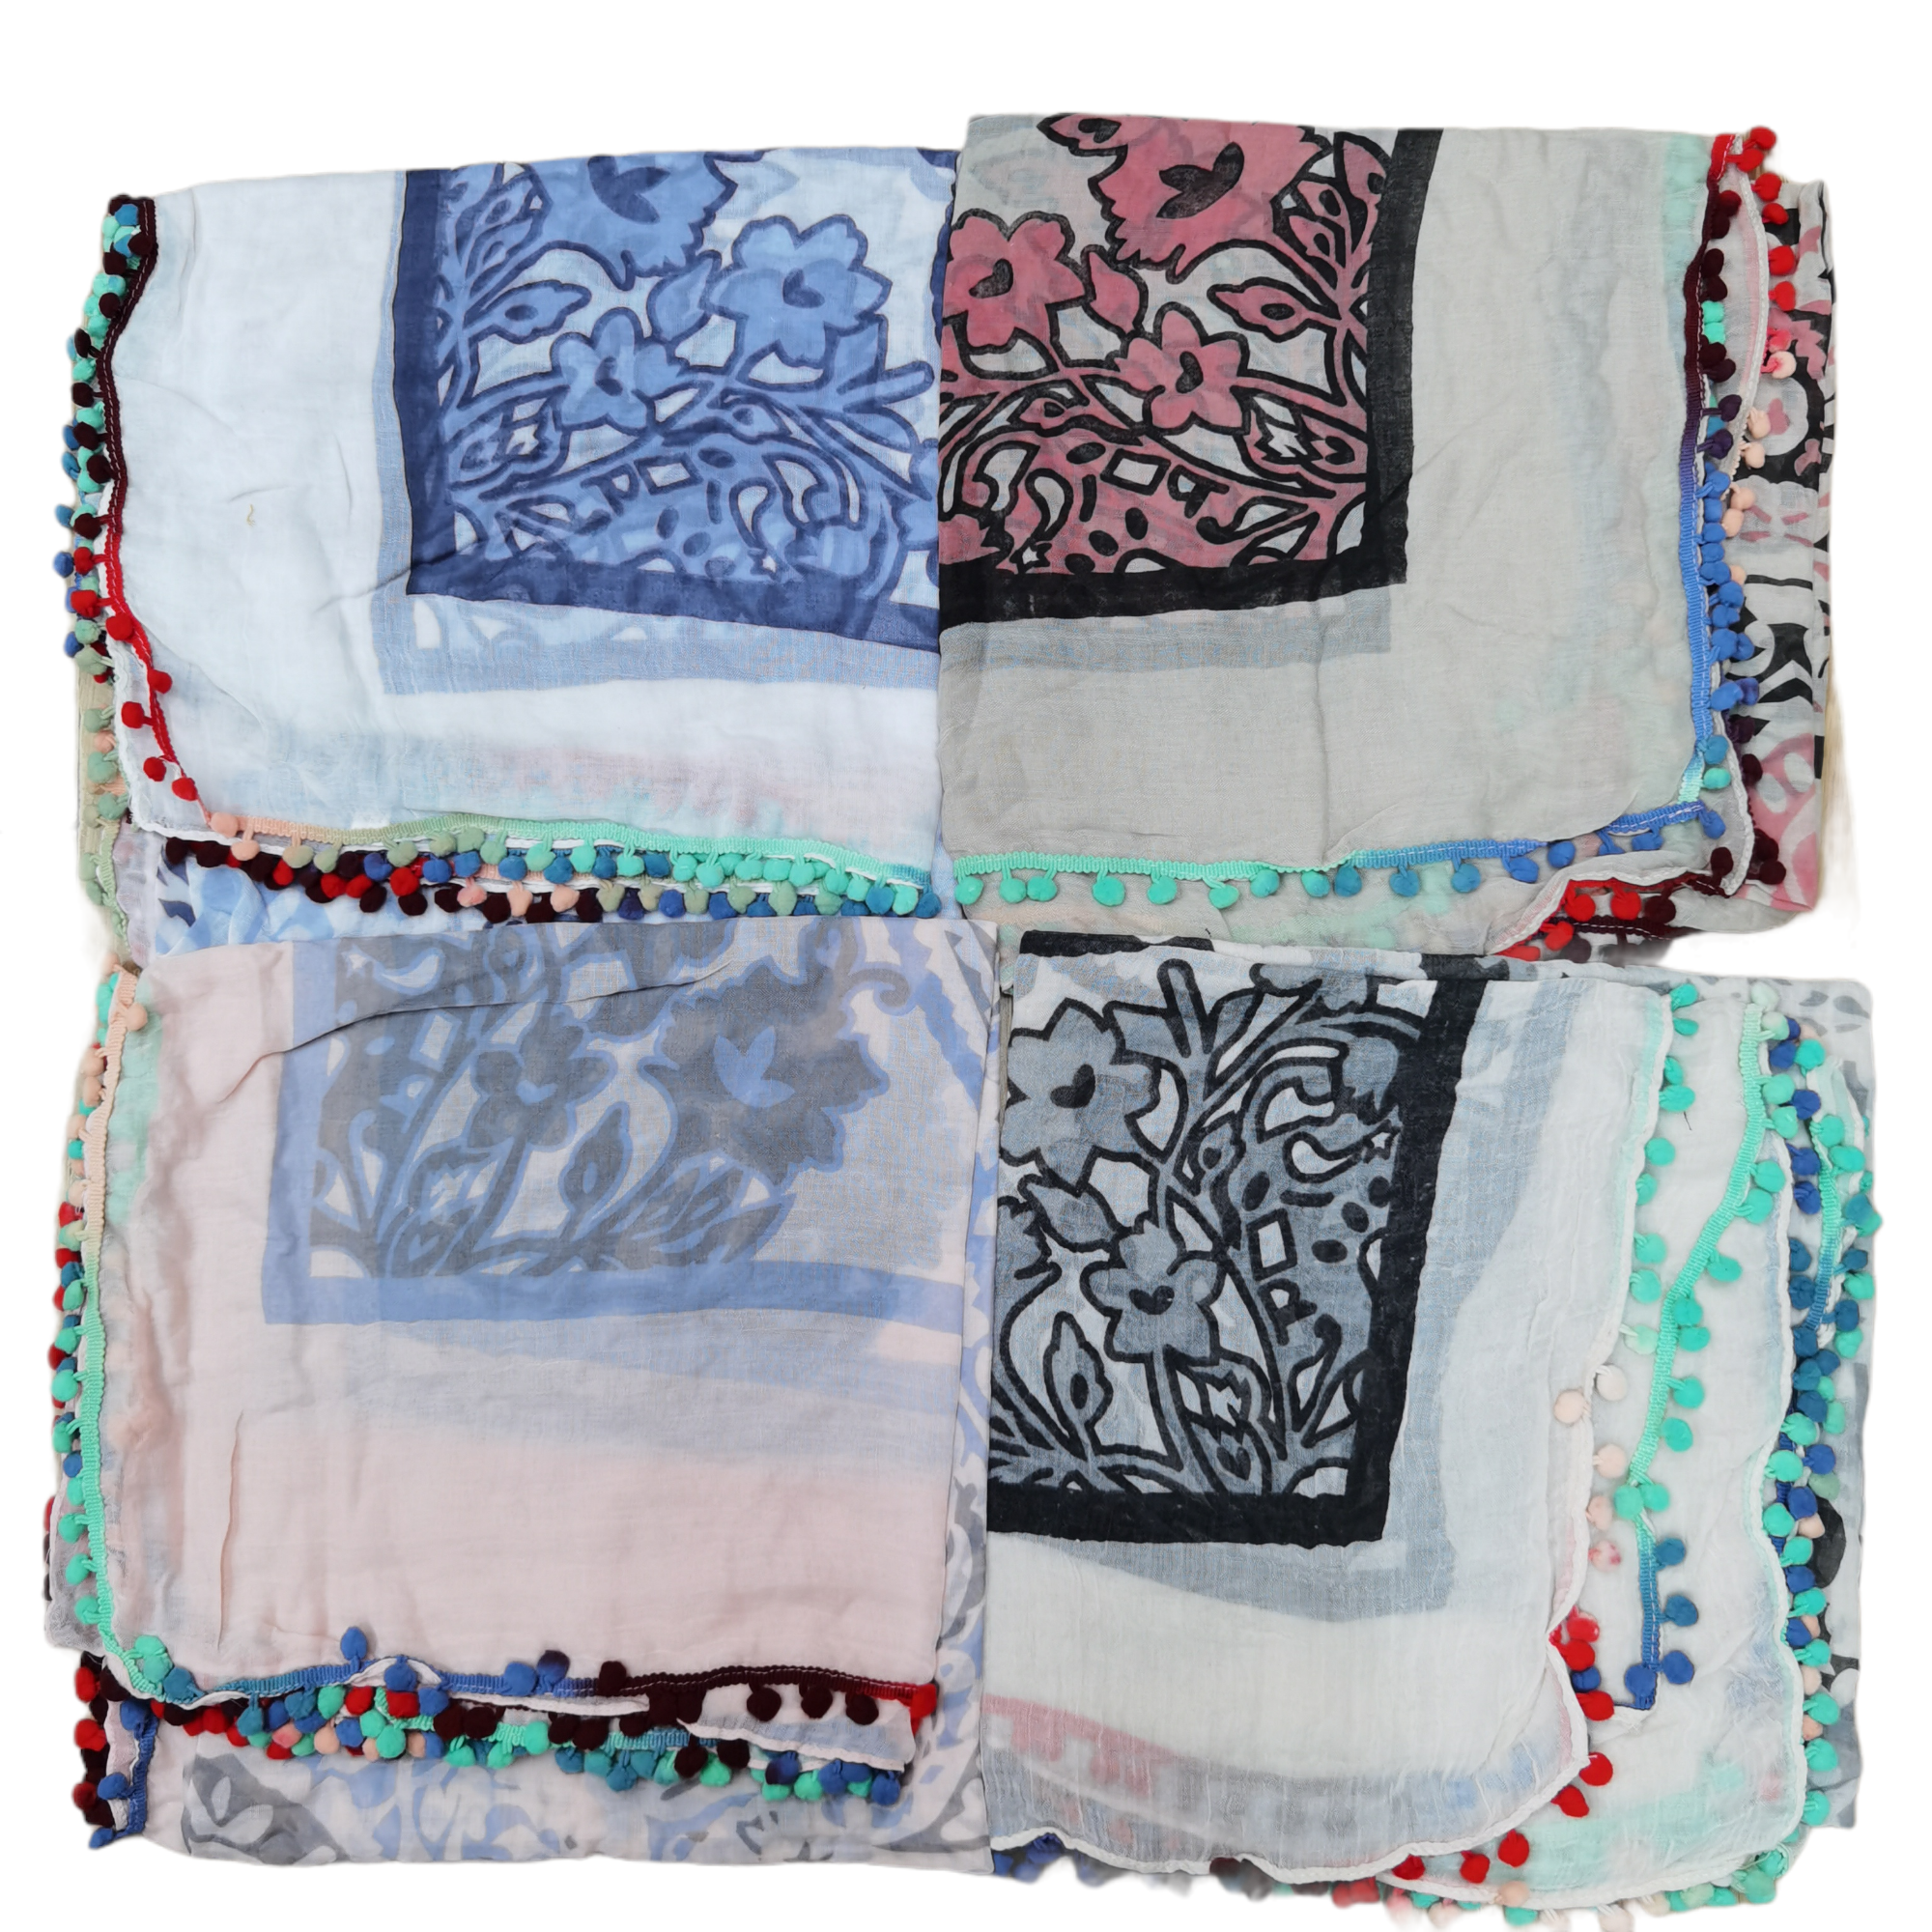 Écharpe foulard pompon couleurs mélangées (x6)